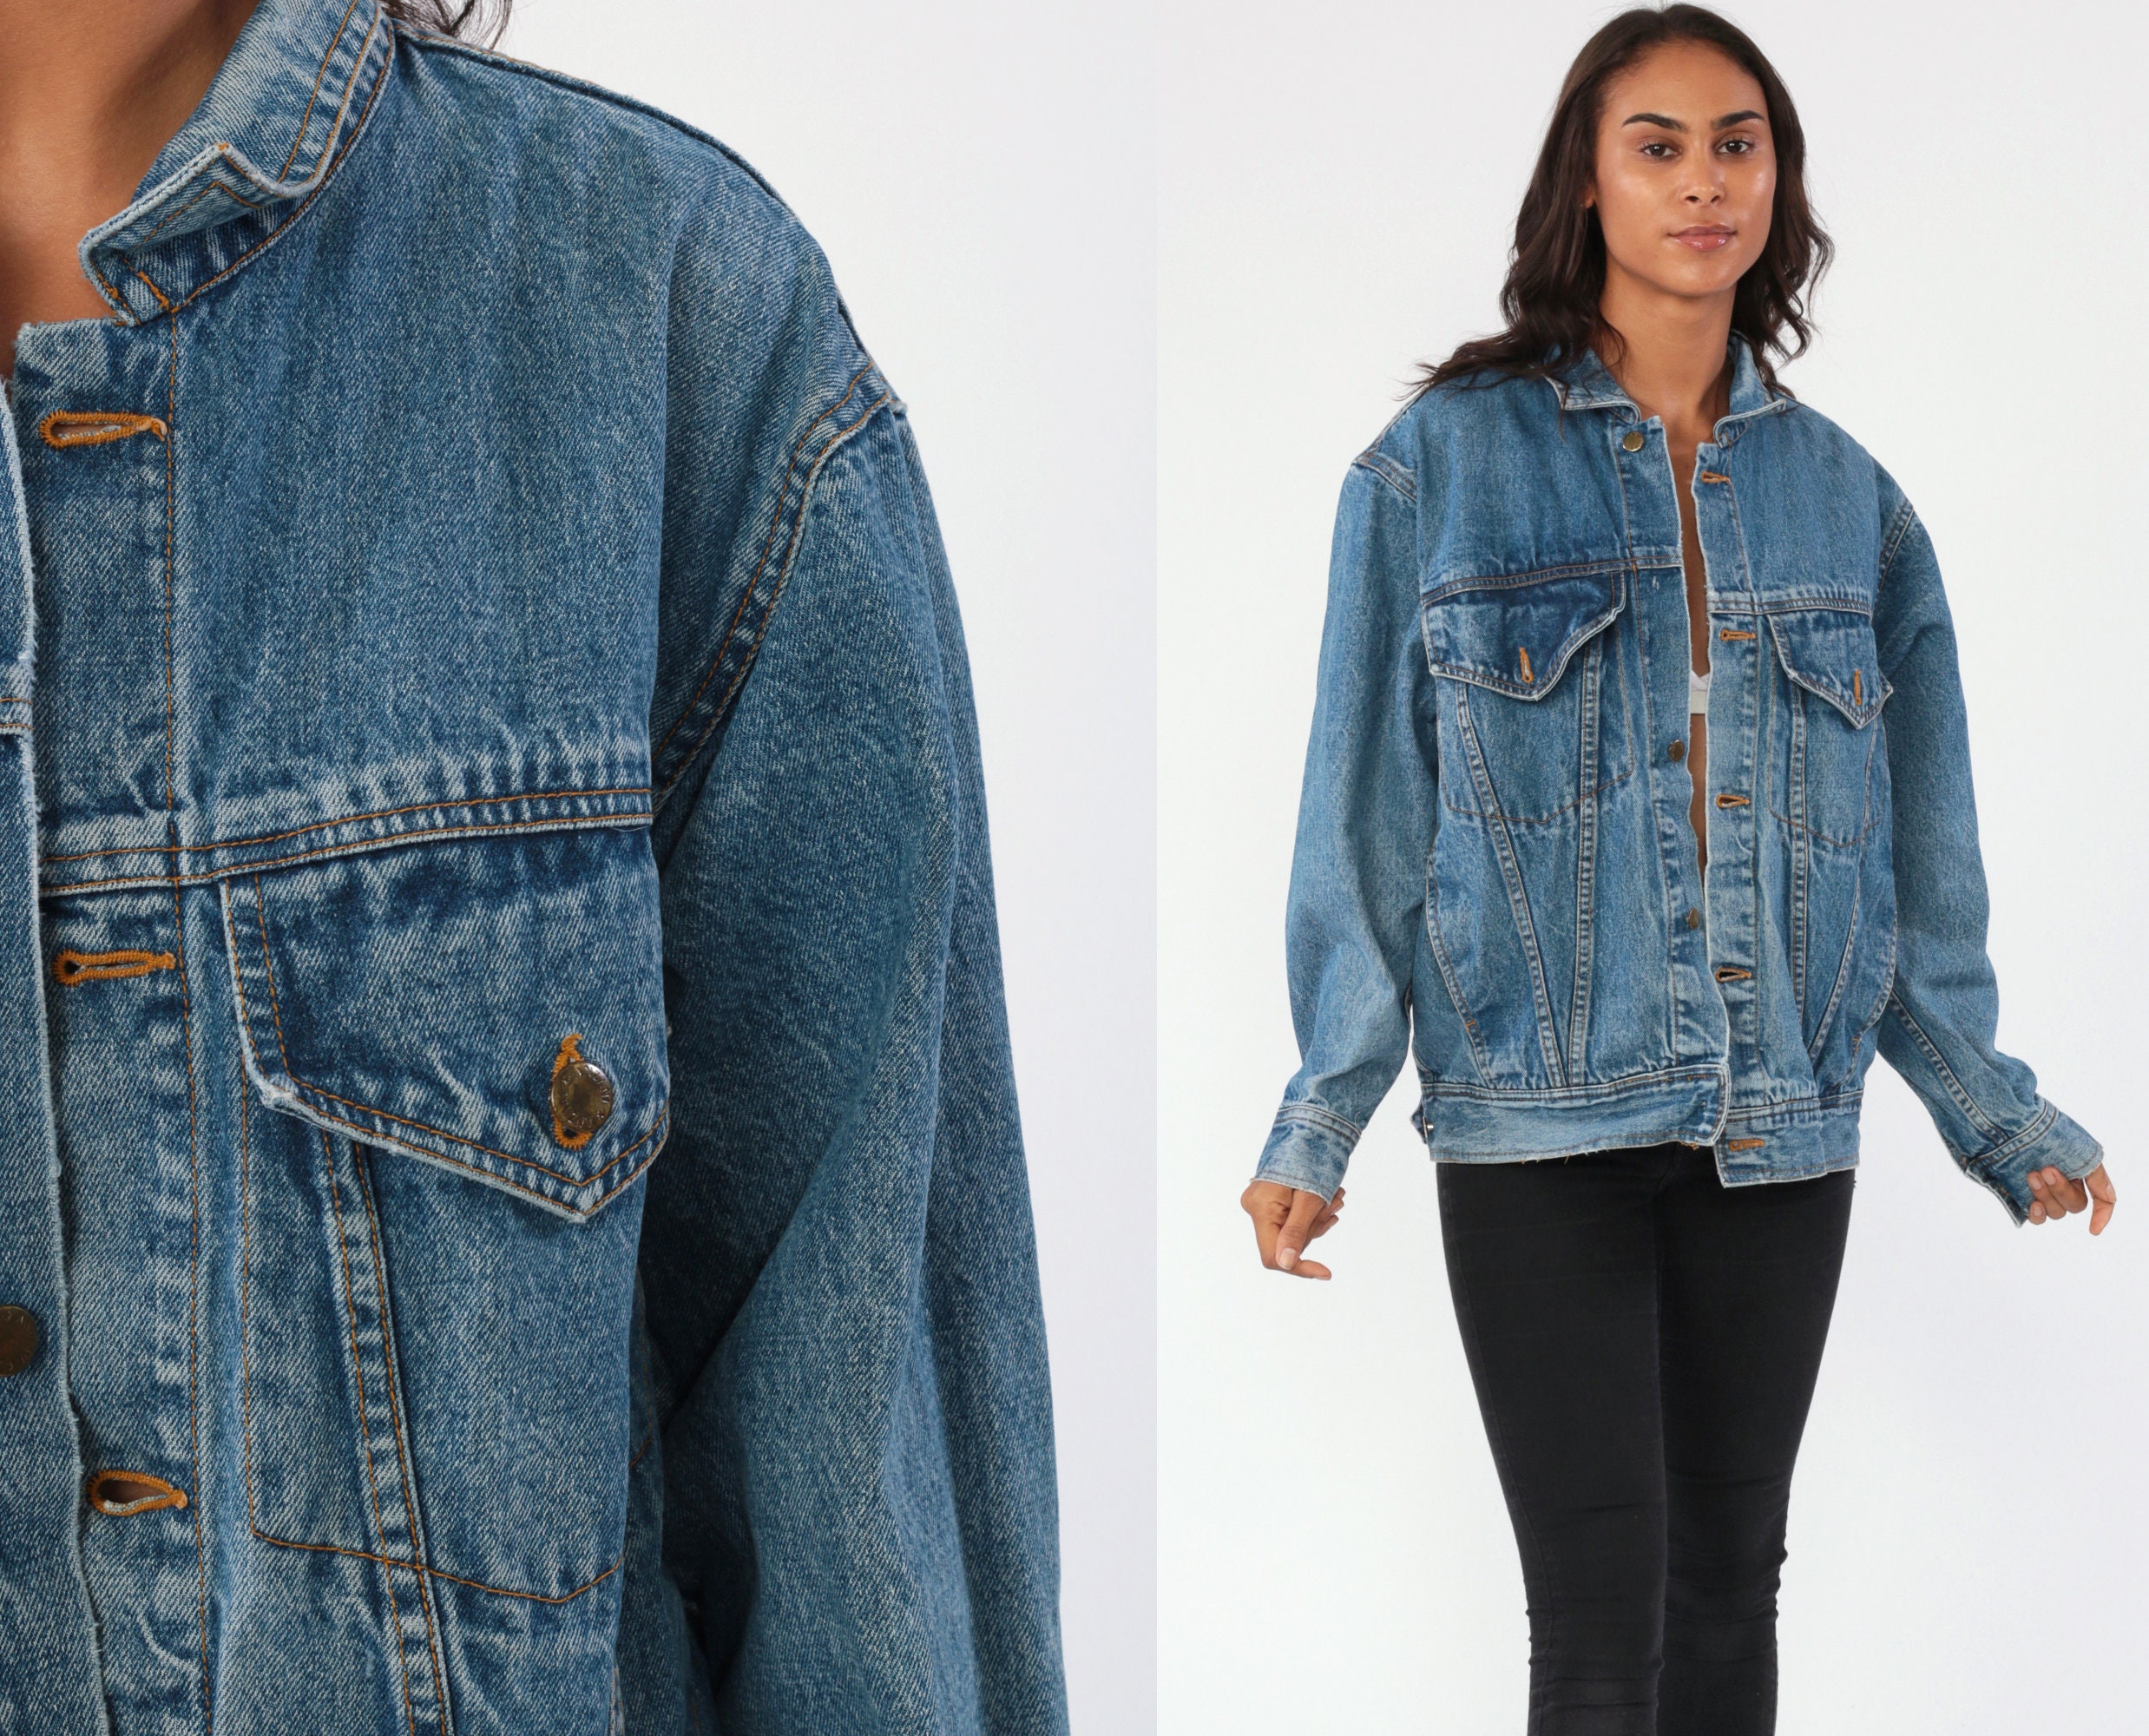 90's jean jacket fashion